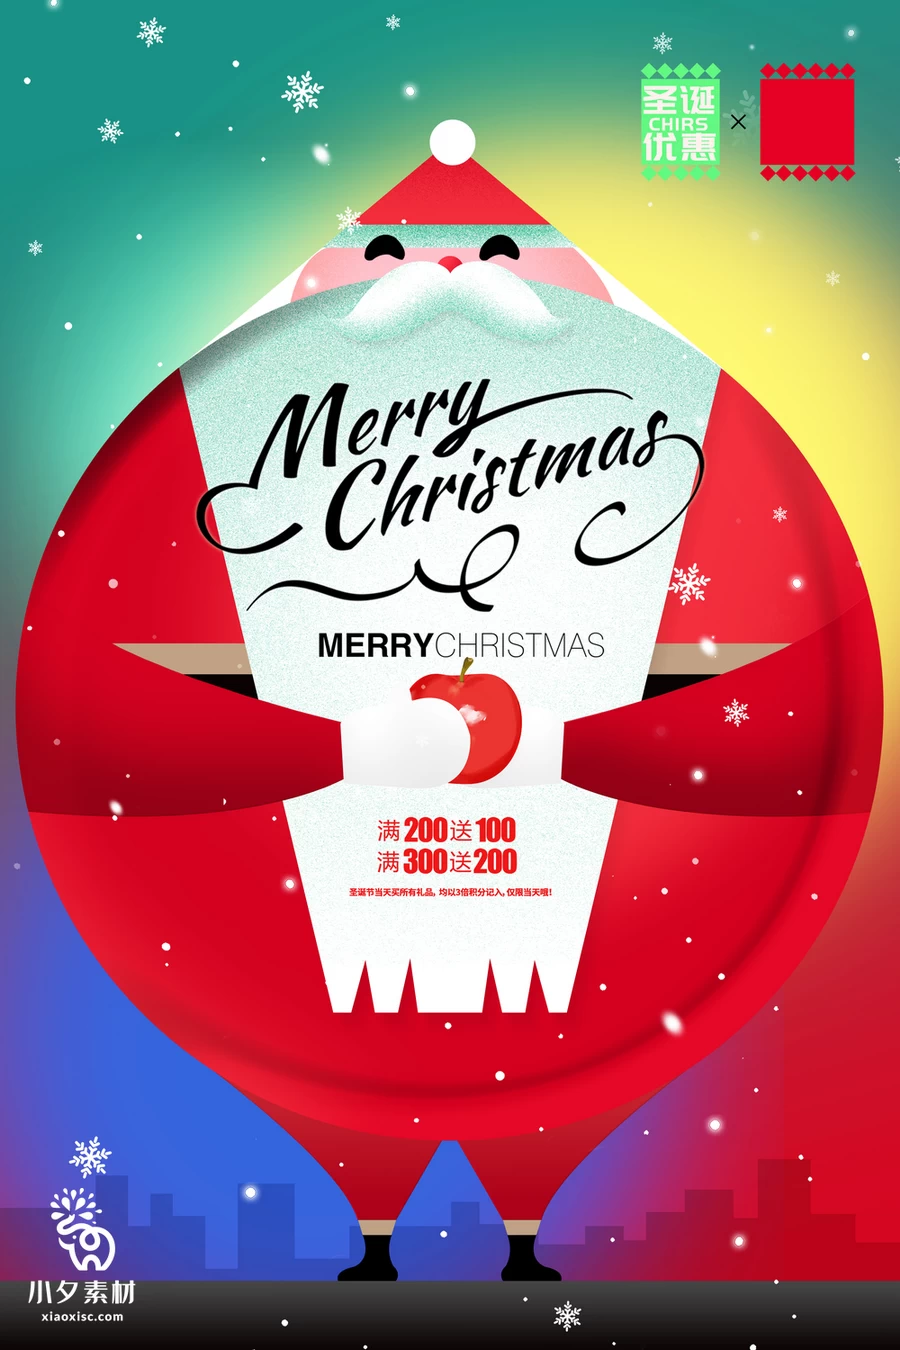 圣诞节节日节庆海报模板PSD分层设计素材【006】